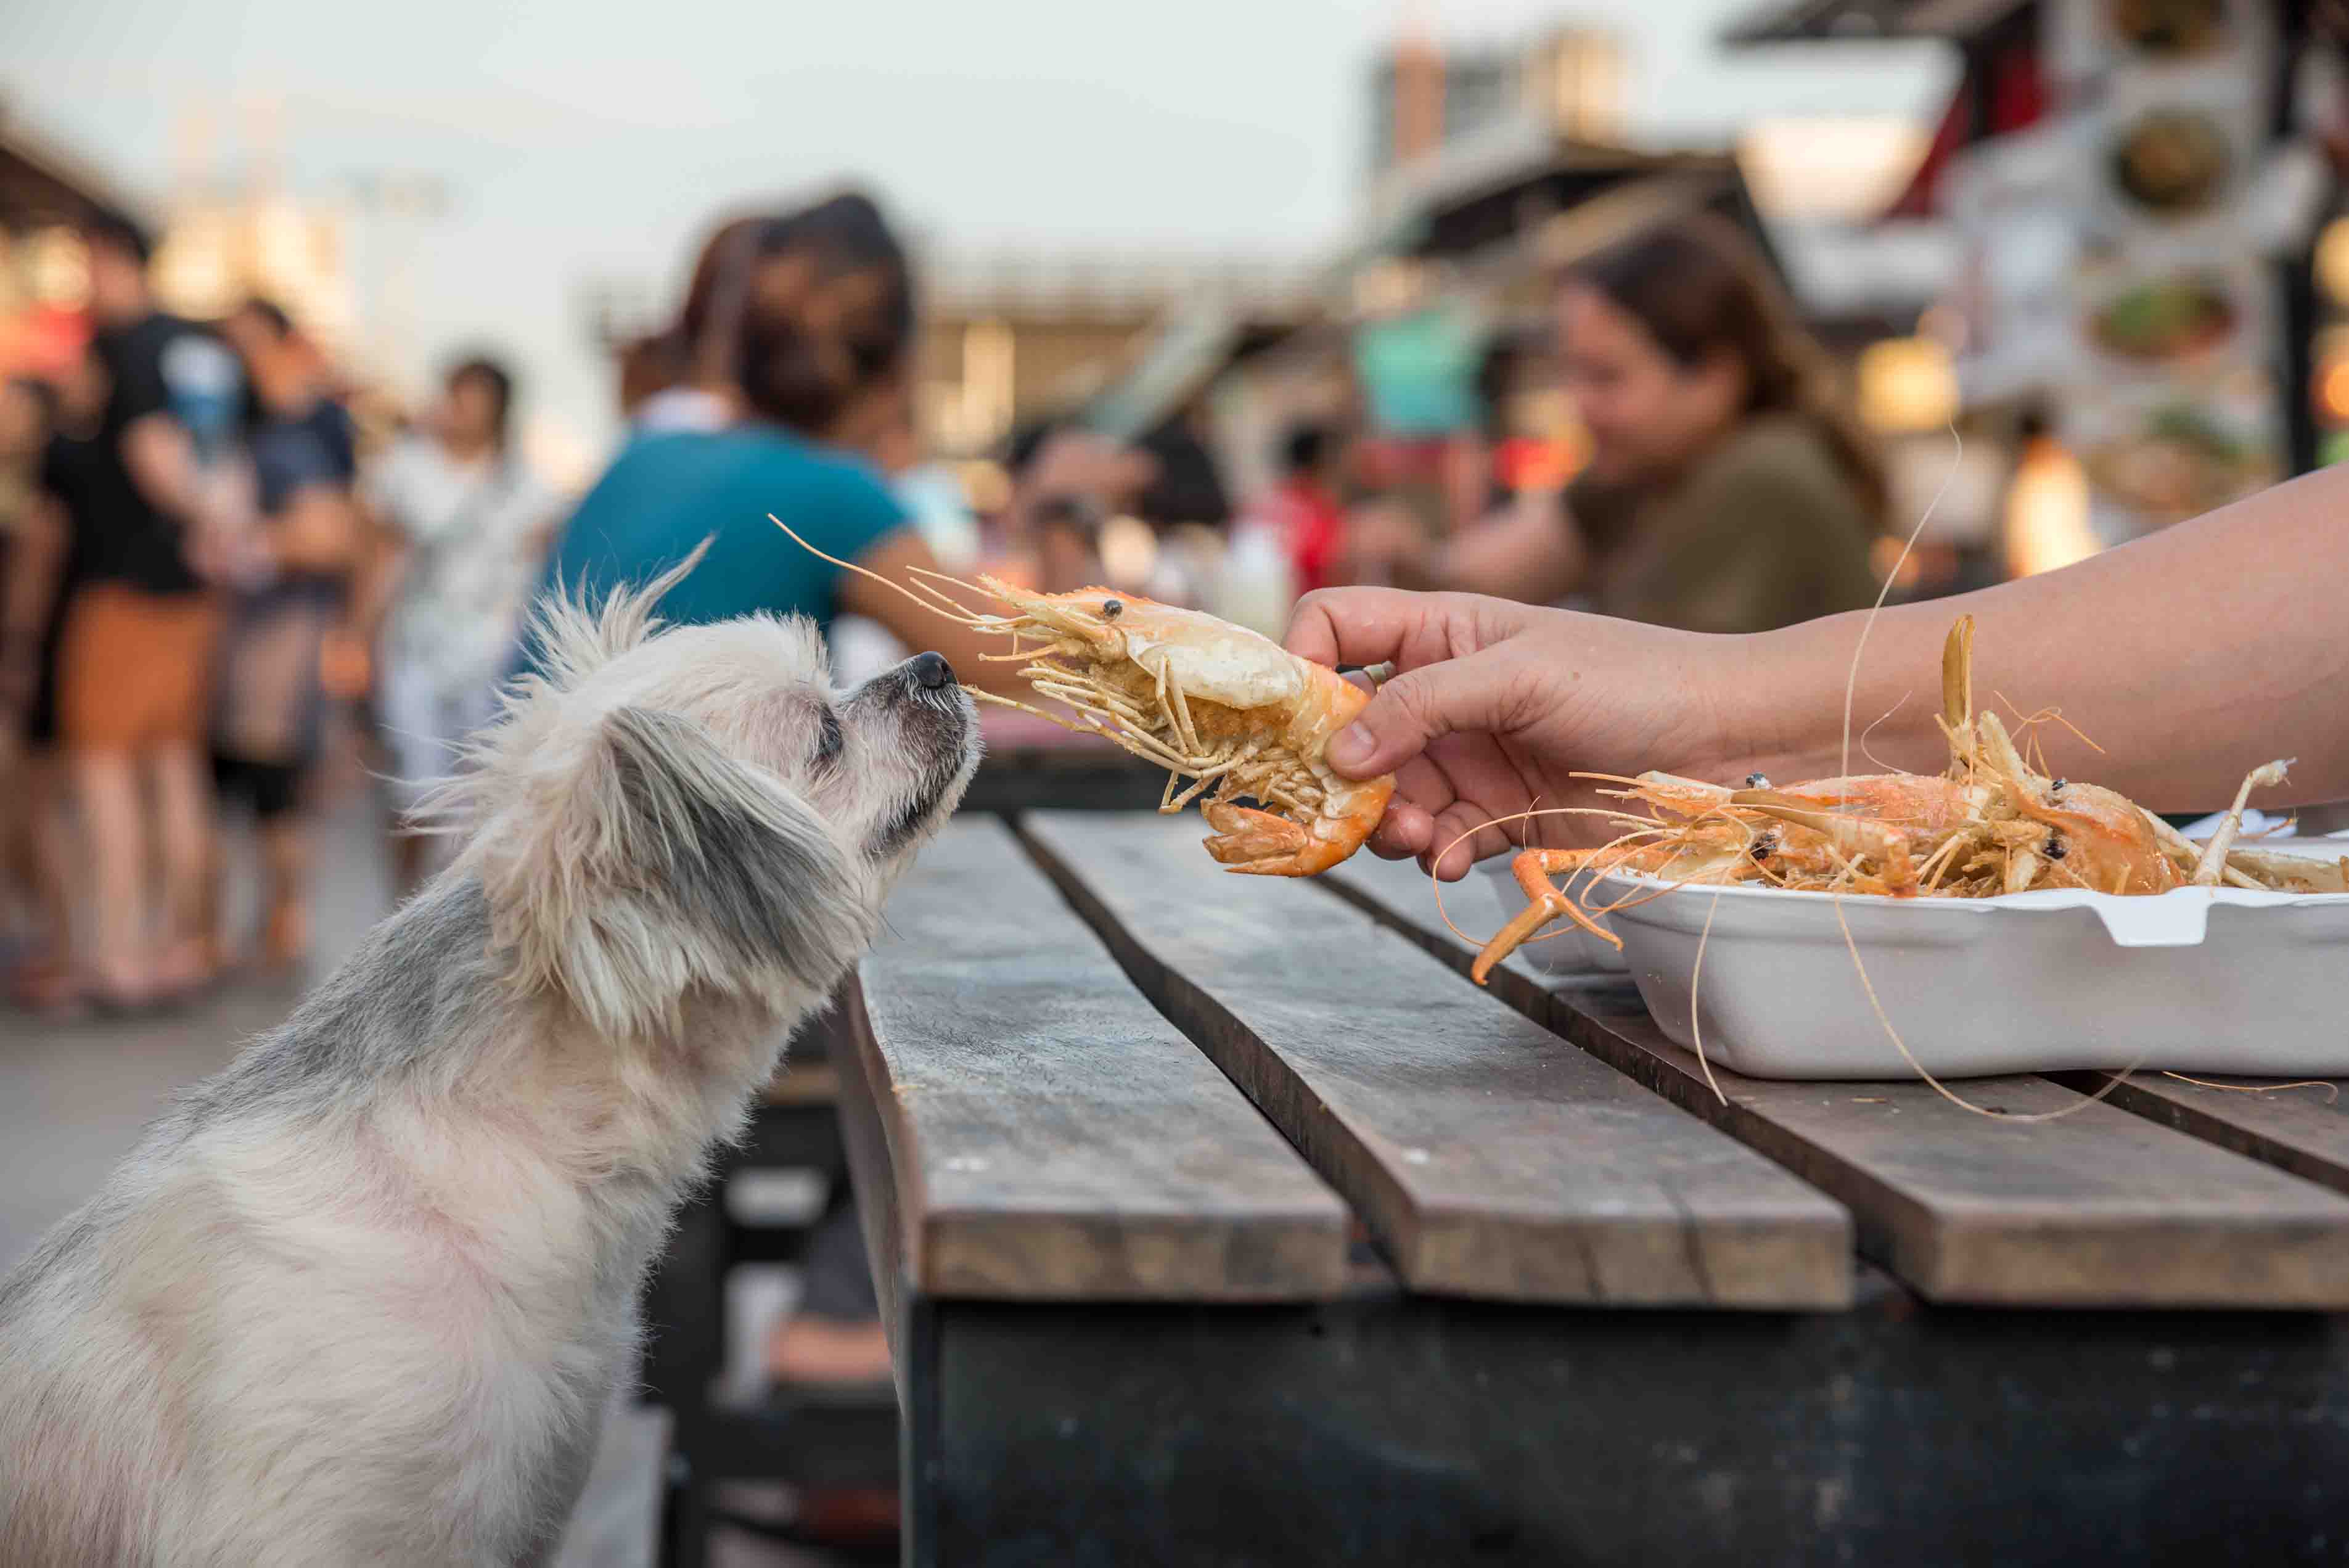 Dog smelling seafood at restaurant